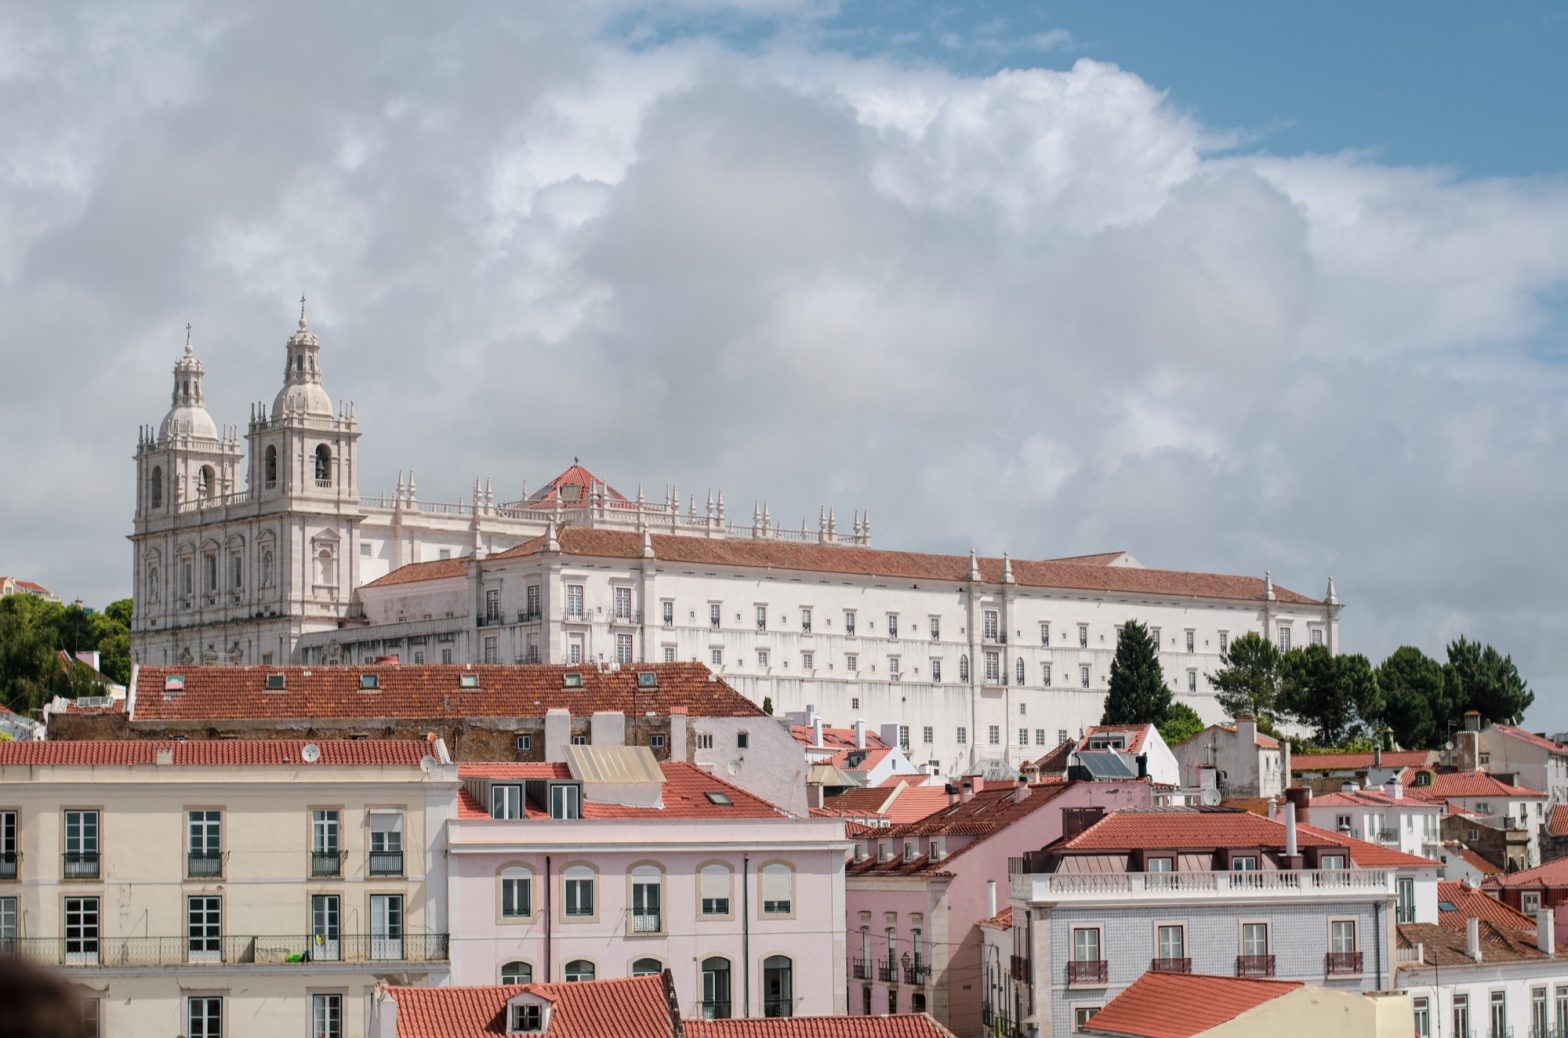 My Lisbon experience